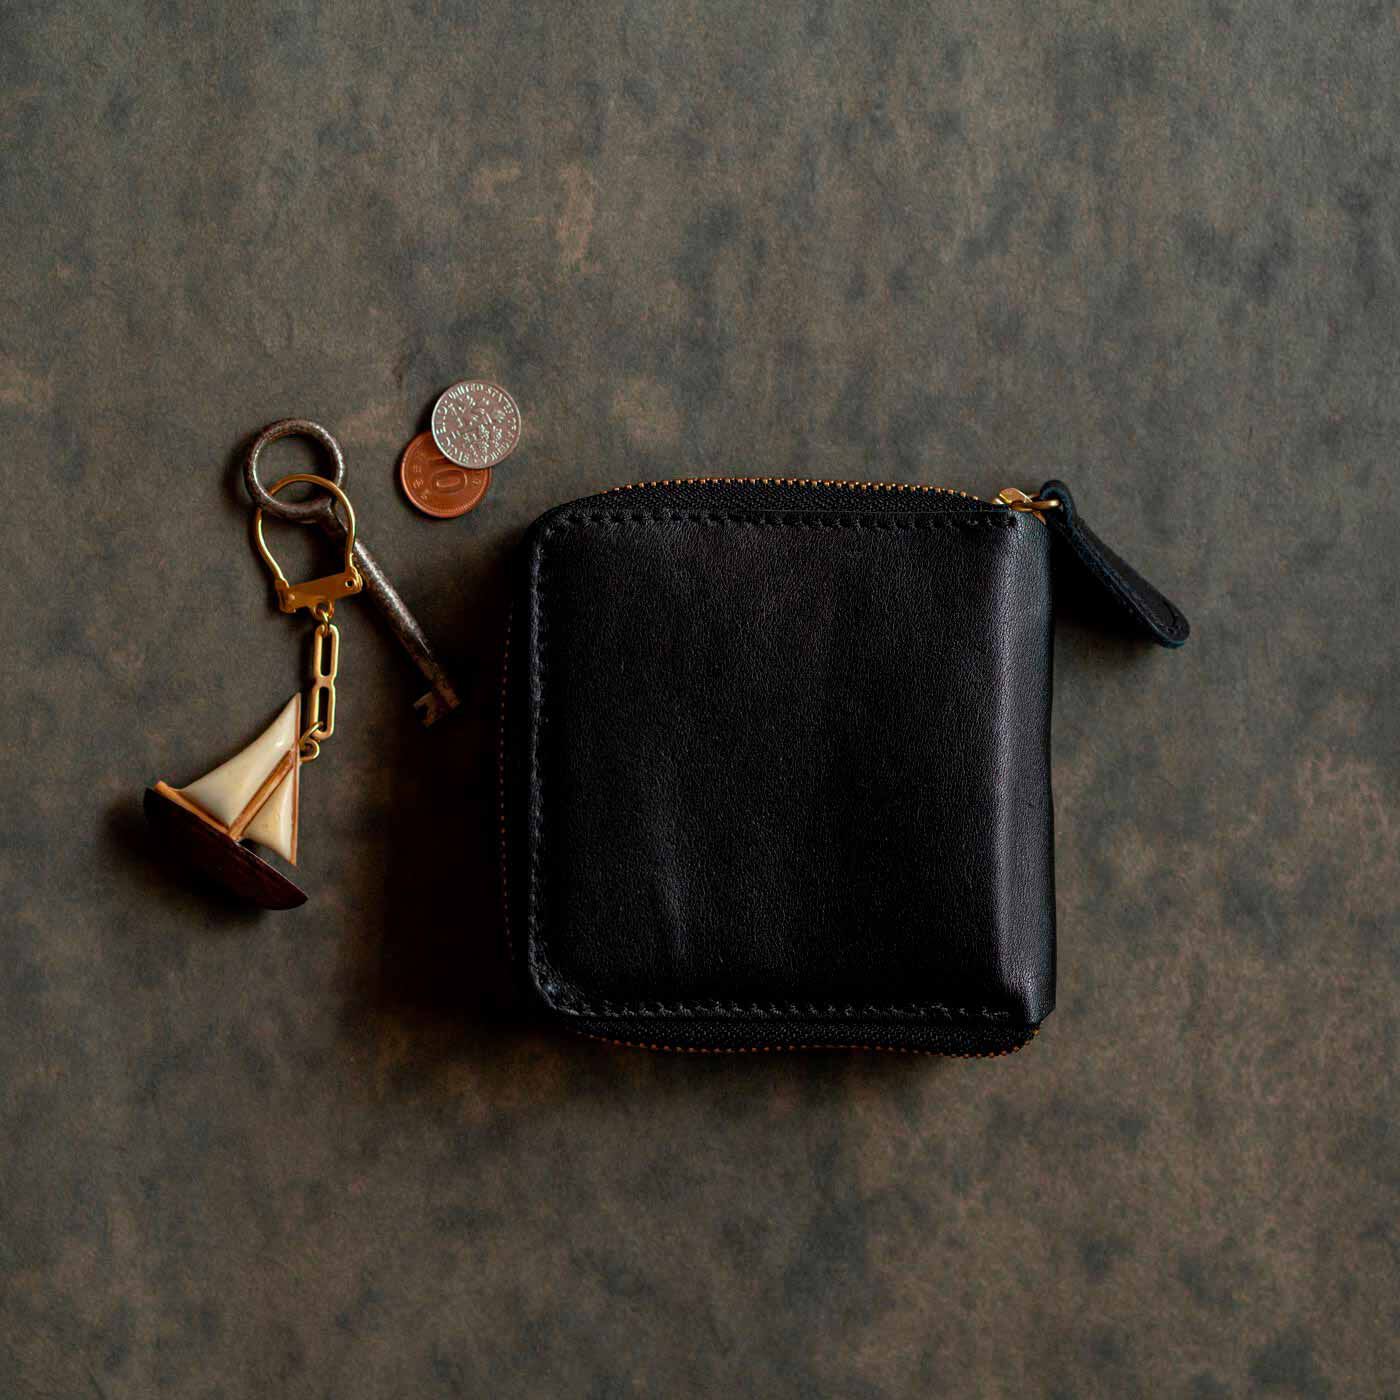 ＆Stories|福岡の鞄作家と作った 職人本革のラウンドジップ折り財布〈ブラック〉|福岡の鞄作家・岡政孝さんに、「以前作ったラウンドジップ財布をアップデートしませんか？」とお声かけしたところ、想像の上をいく折り財布が誕生しました。